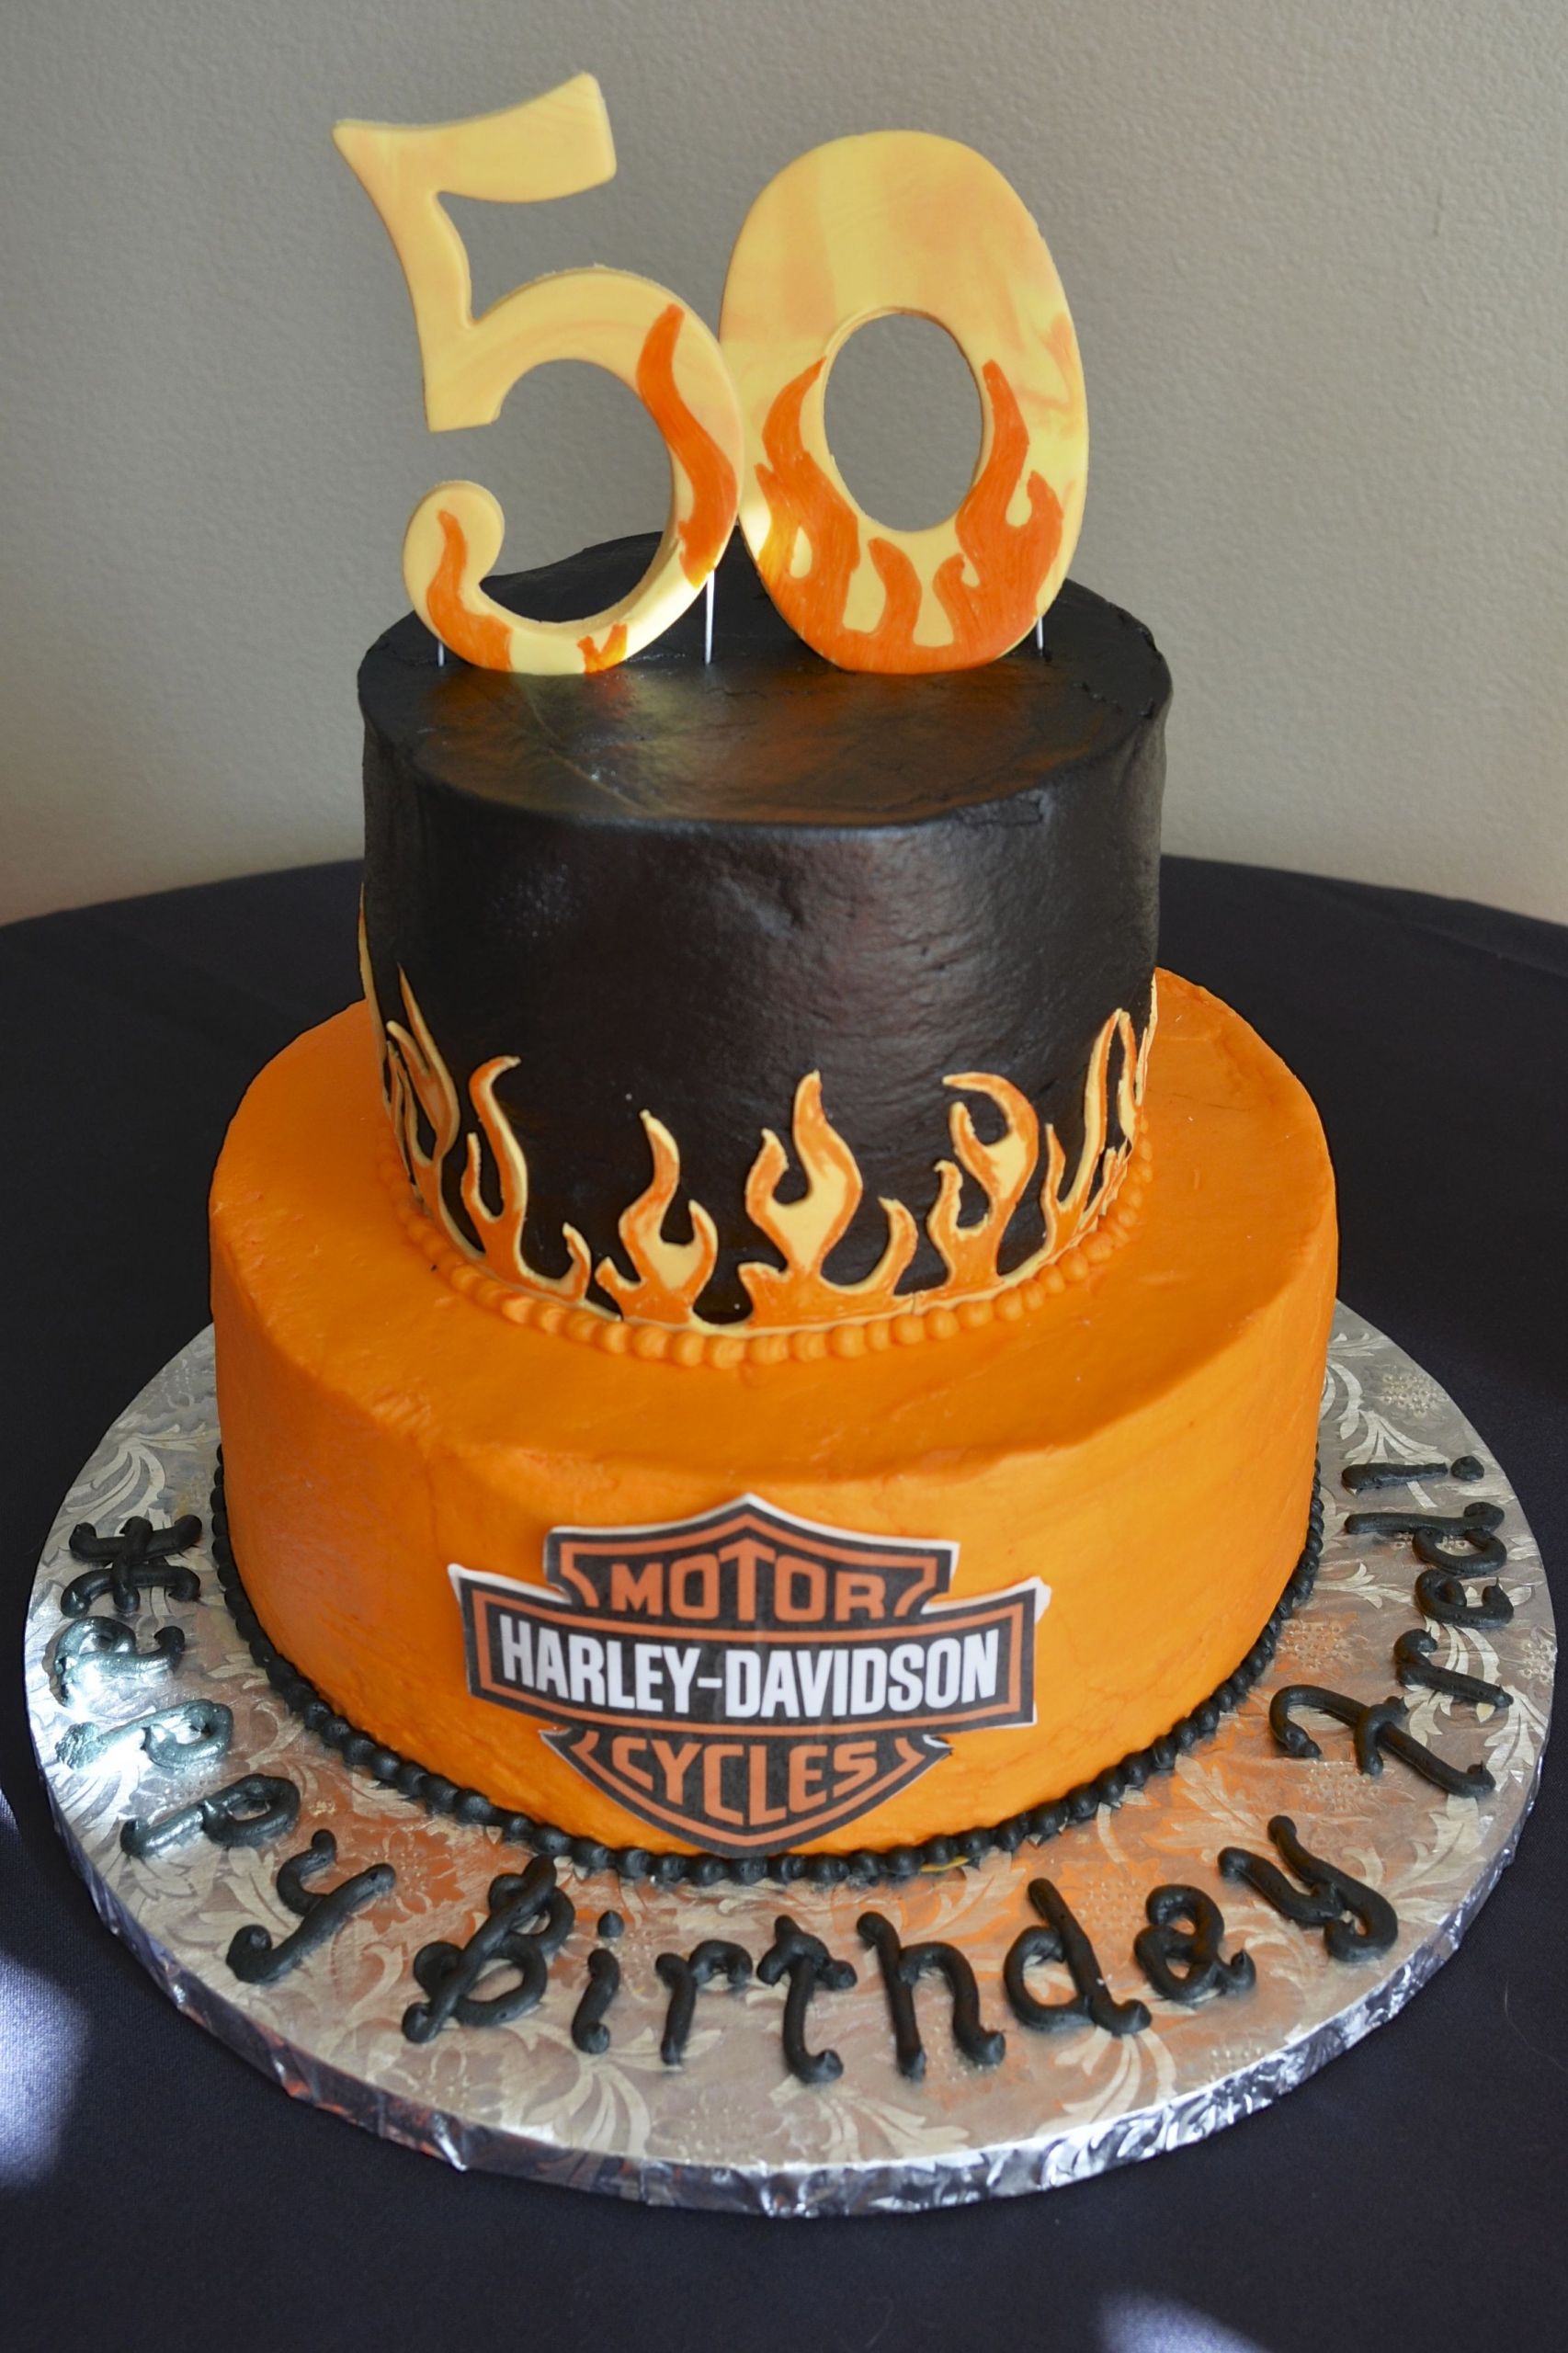 Harley Davidson Birthday Cakes
 Harley Davidson Birthday Cake